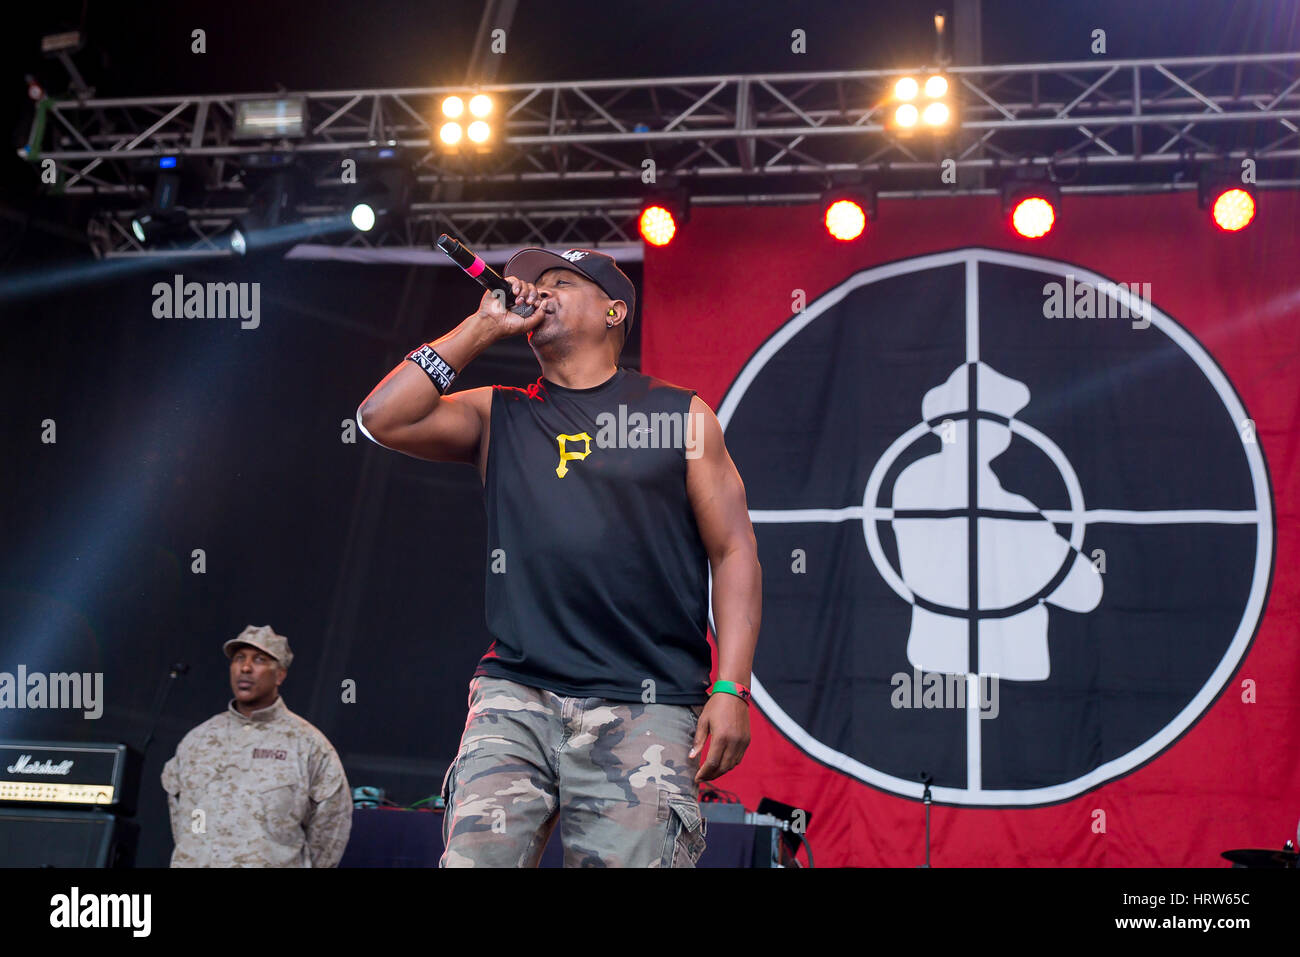 BENICASSIM, Spanien - JUL 19: Public Enemy (Hip-Hop-Gruppe) im Konzert am FIB Festival am 19. Juli 2015 in Benicassim, Spanien. Stockfoto